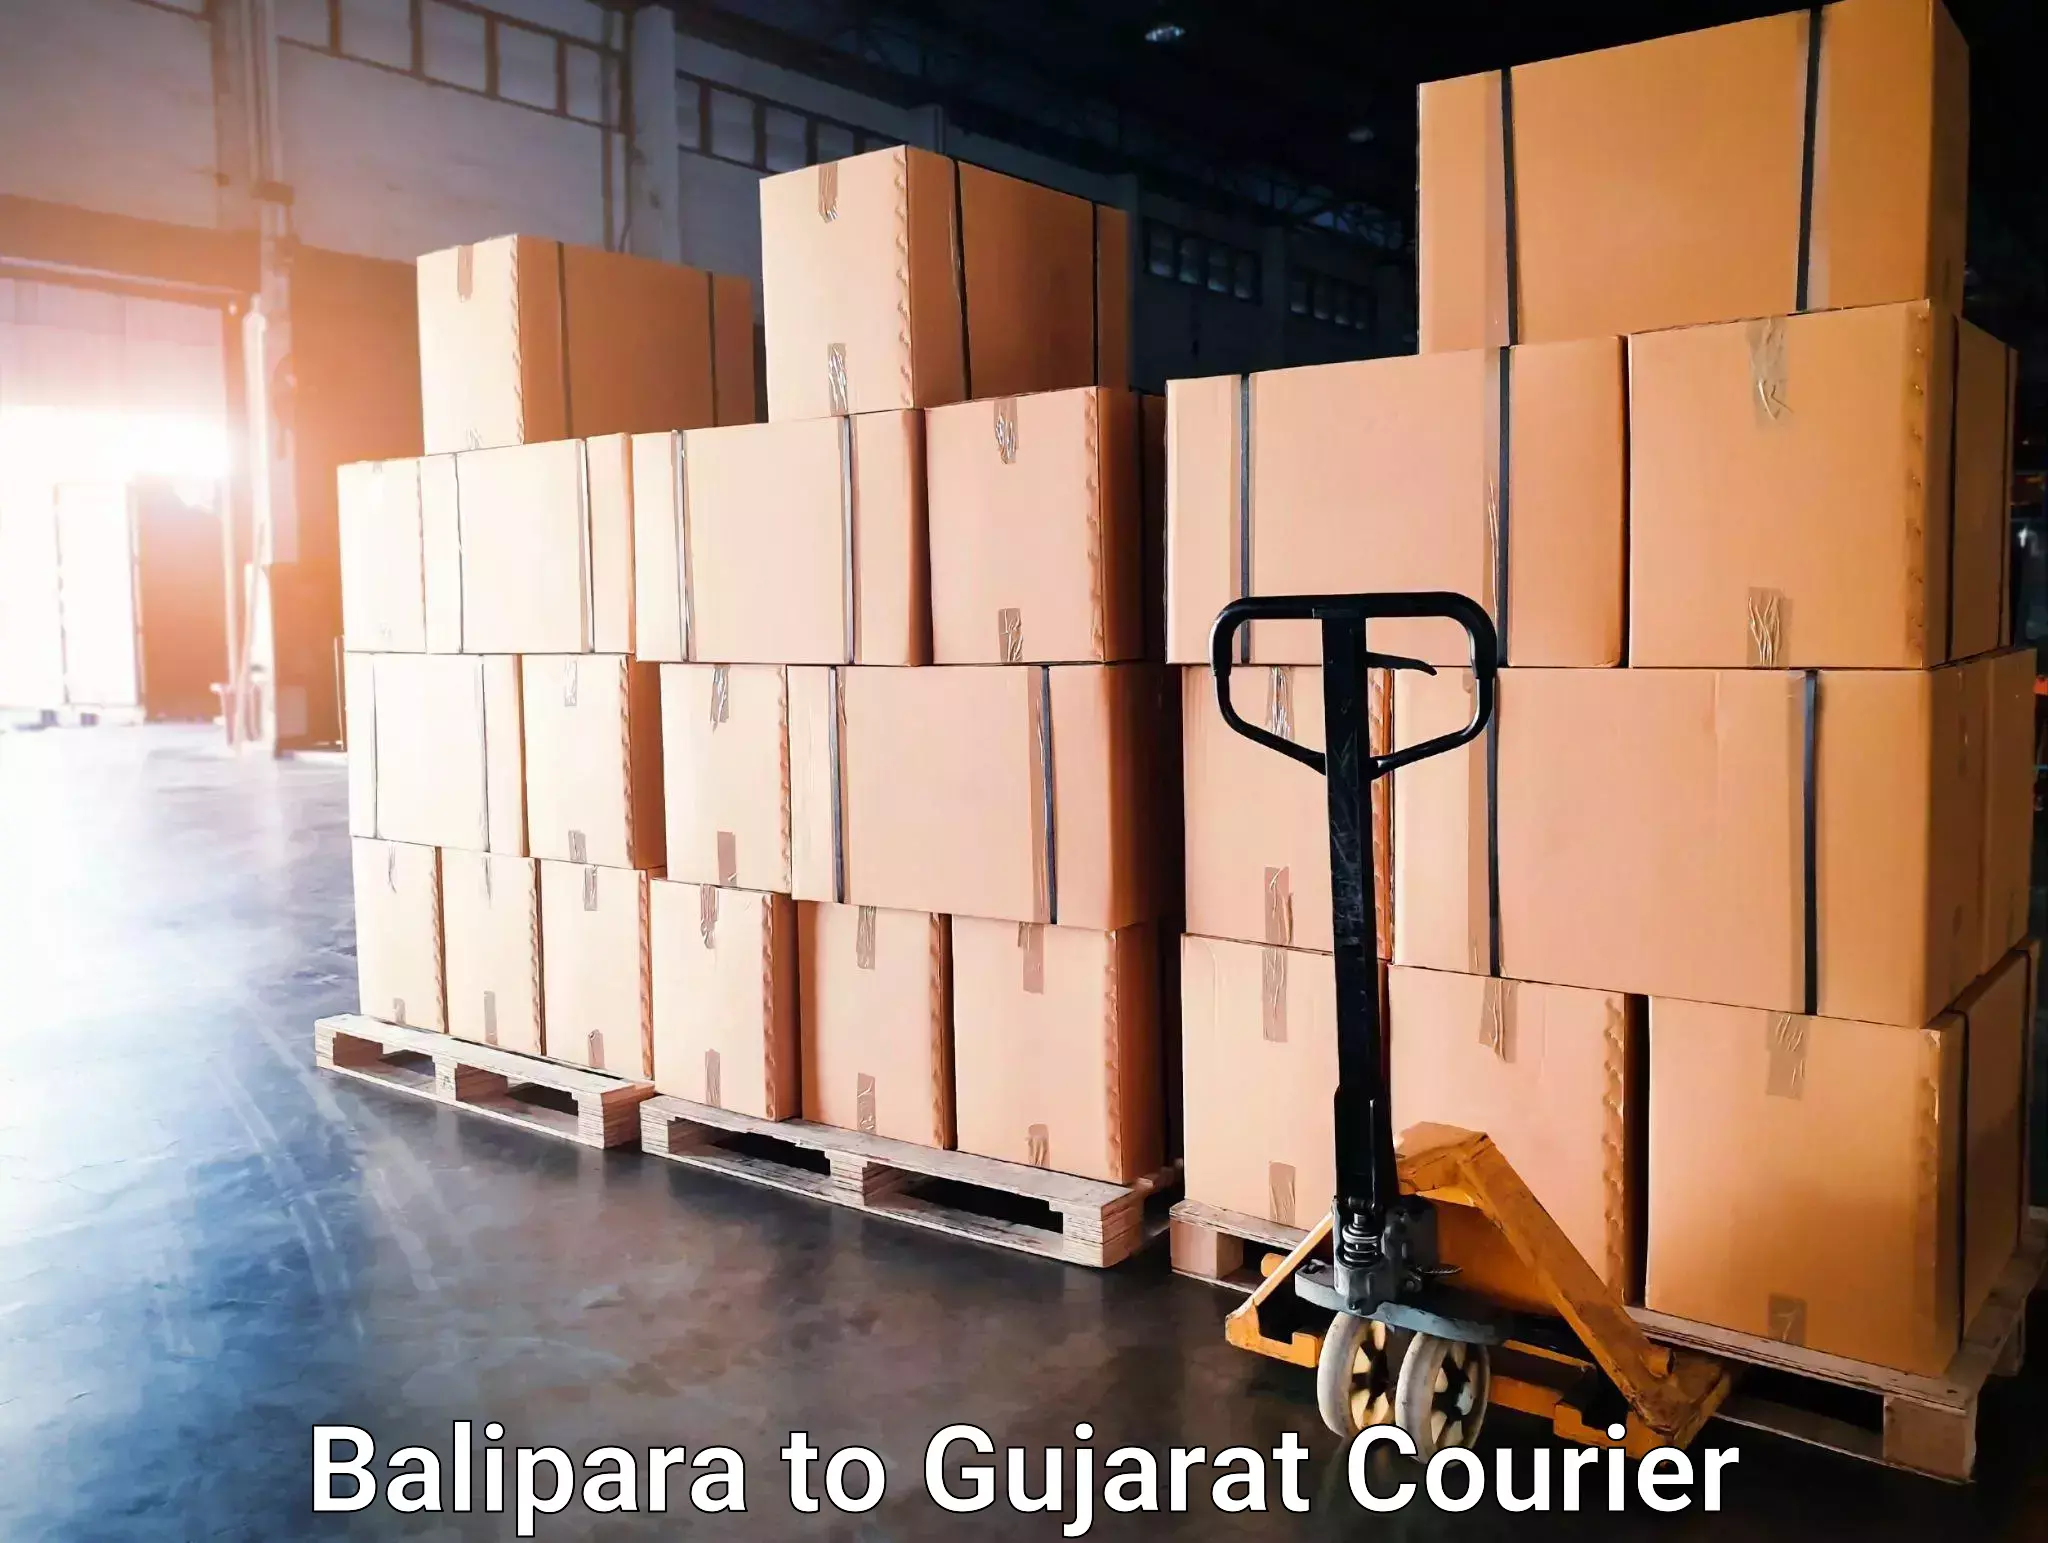 Urgent courier needs Balipara to Madhavpur